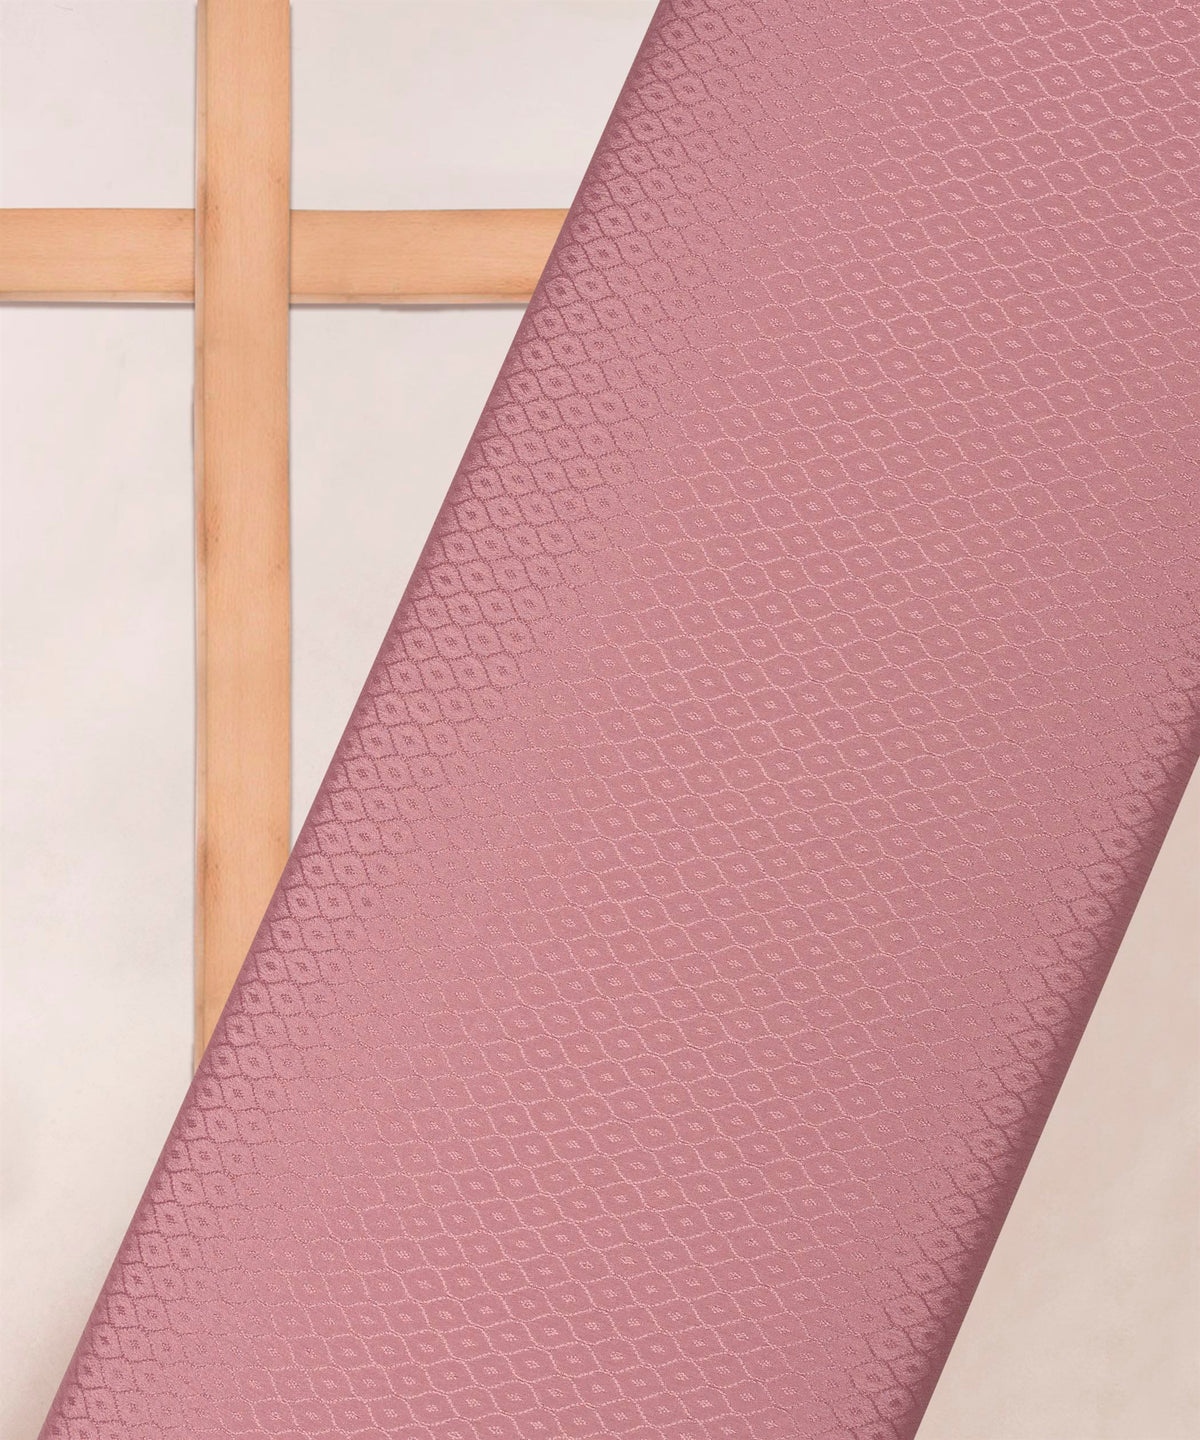 Pink Chinnon-Chiffon Fabric with jacquard-2